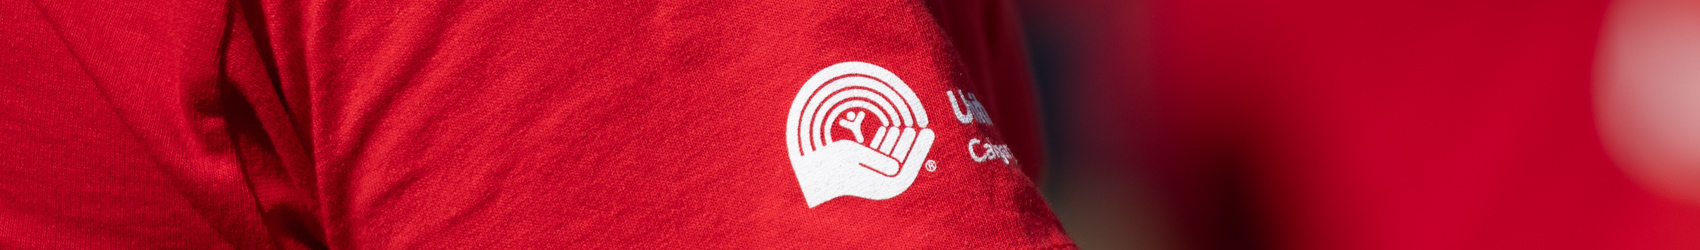 United Way logo on shirt